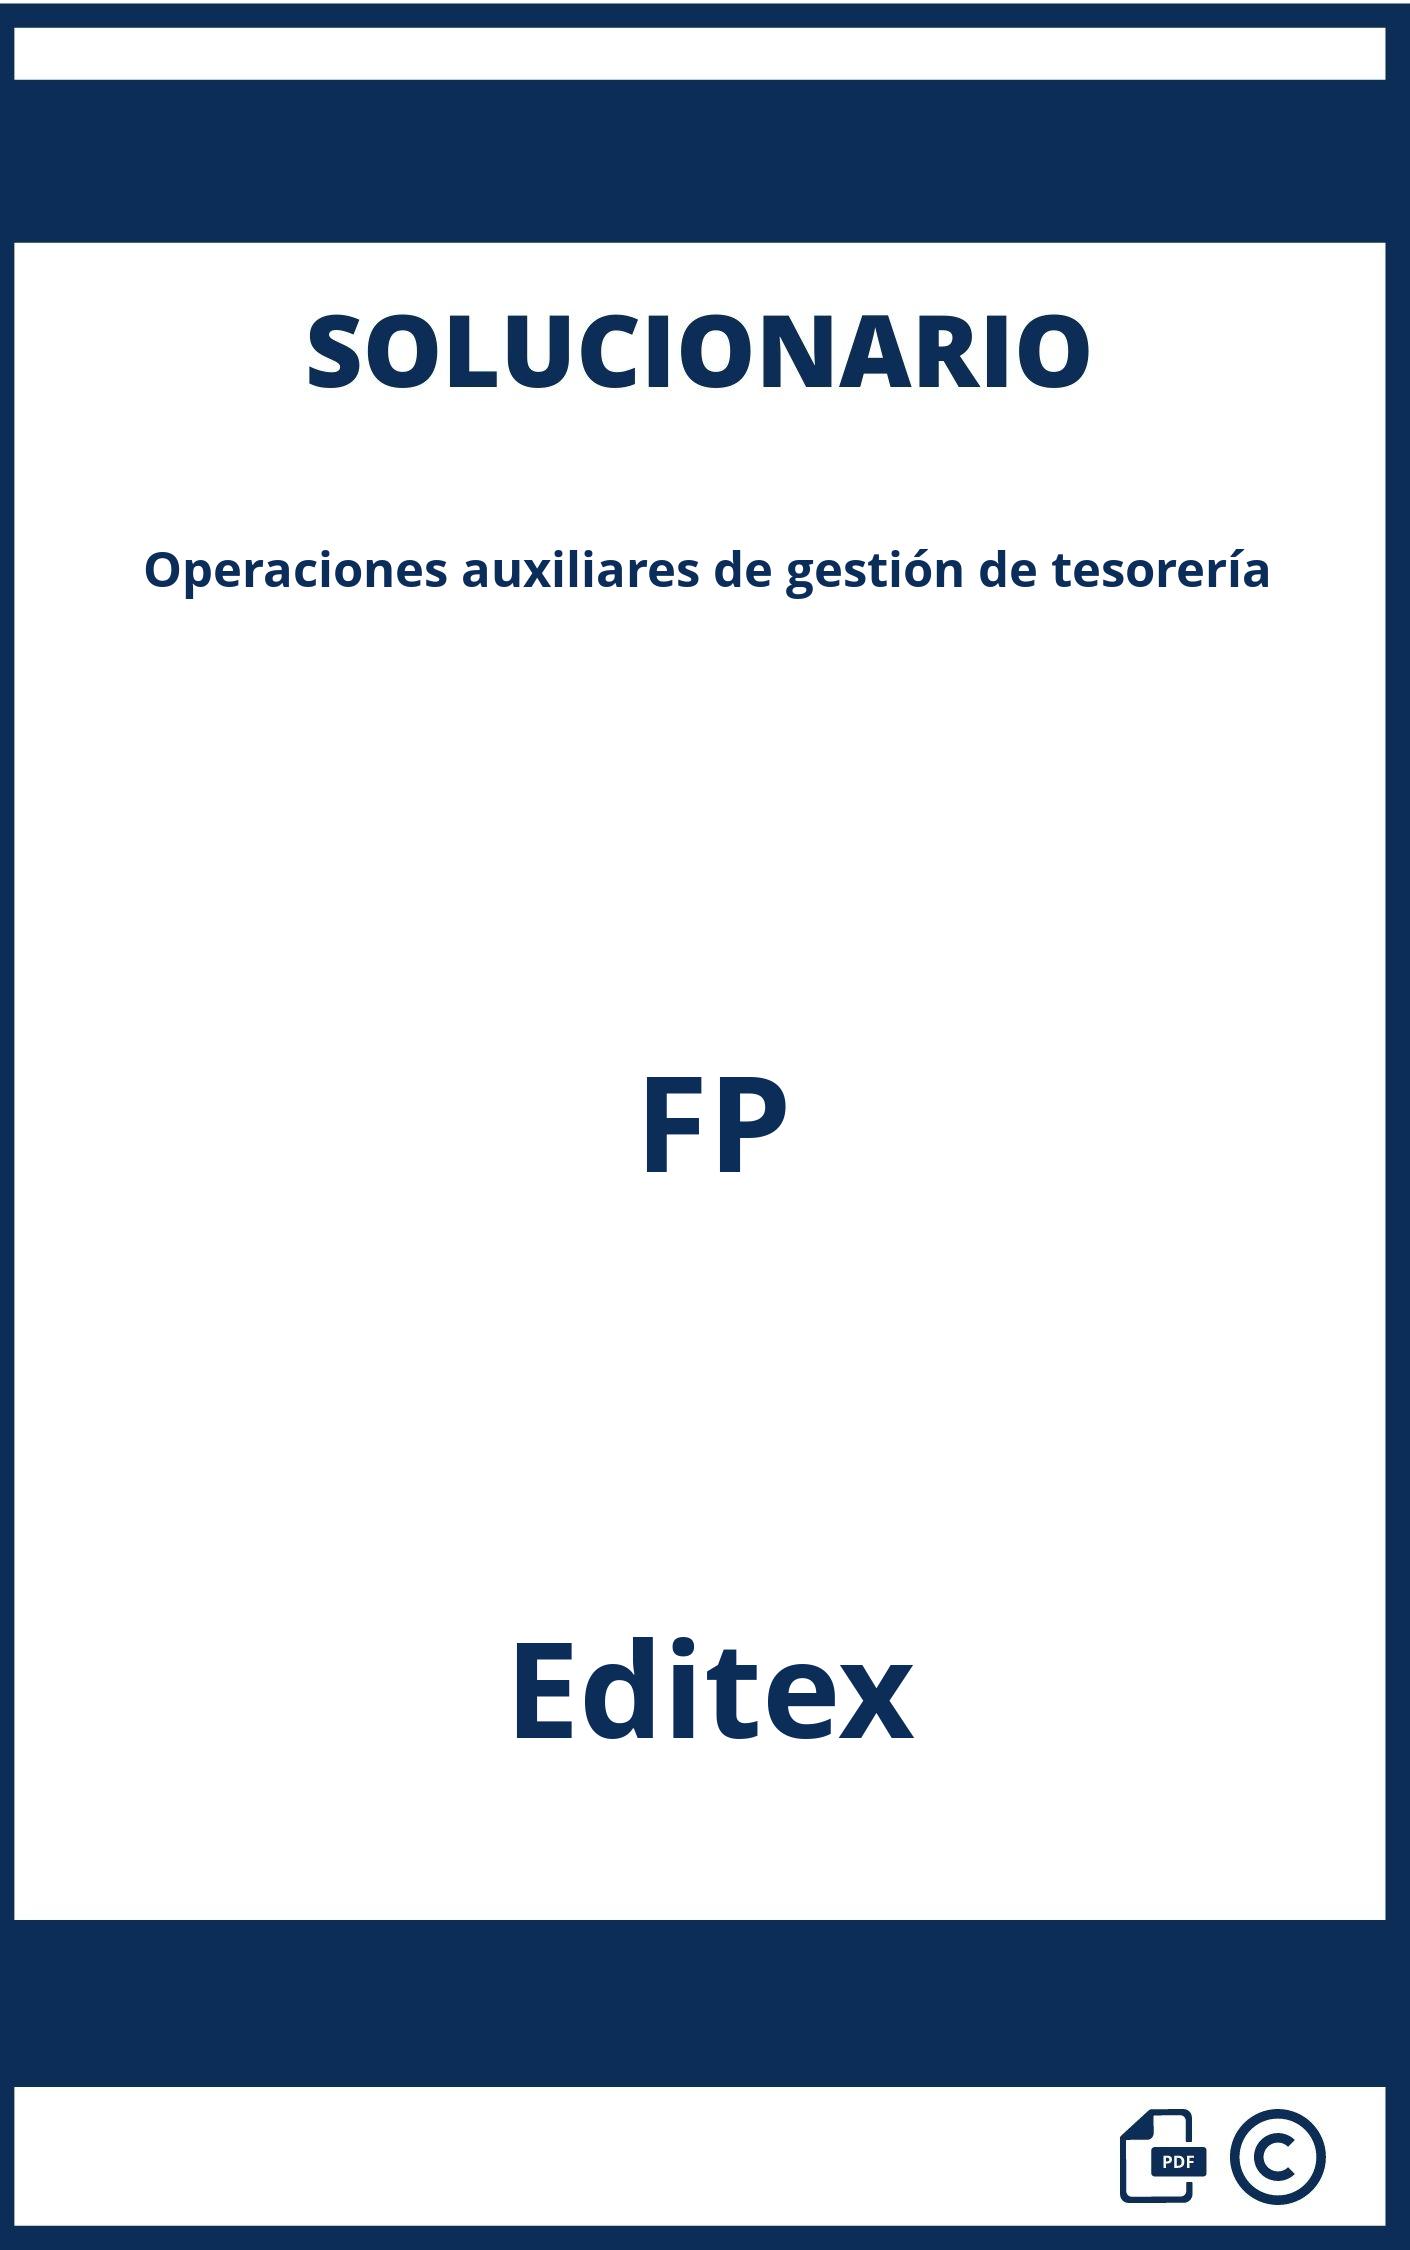 Solucionario Operaciones auxiliares de gestión de tesorería FP Editex